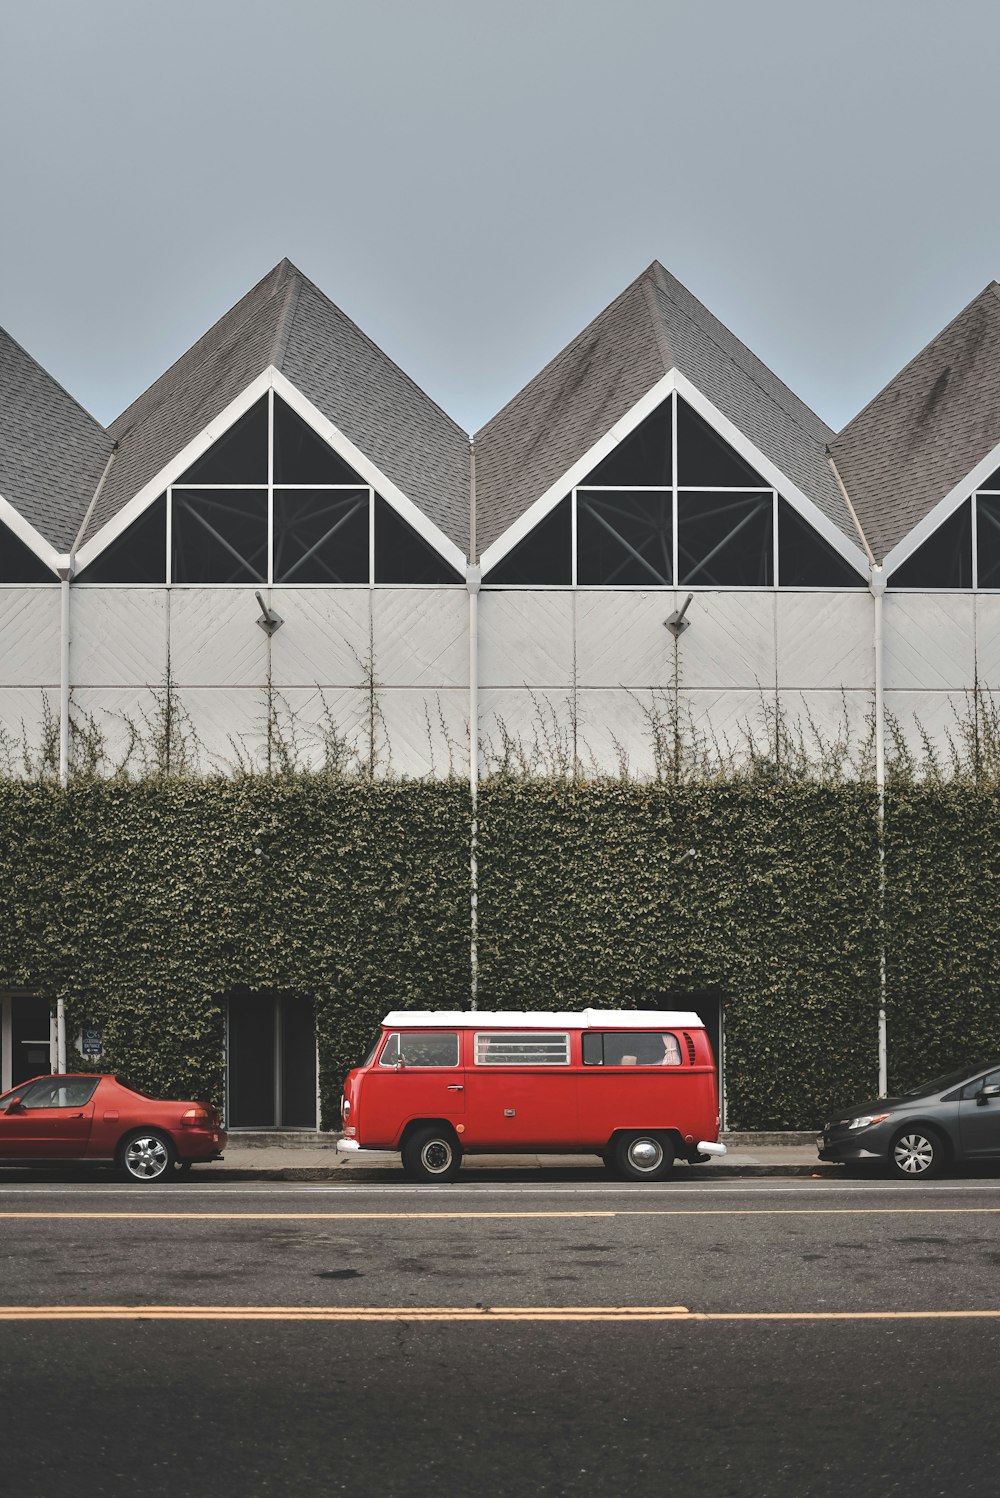 Camioneta Volkswagen roja y blanca estacionada frente a la pared cubierta de enredaderas